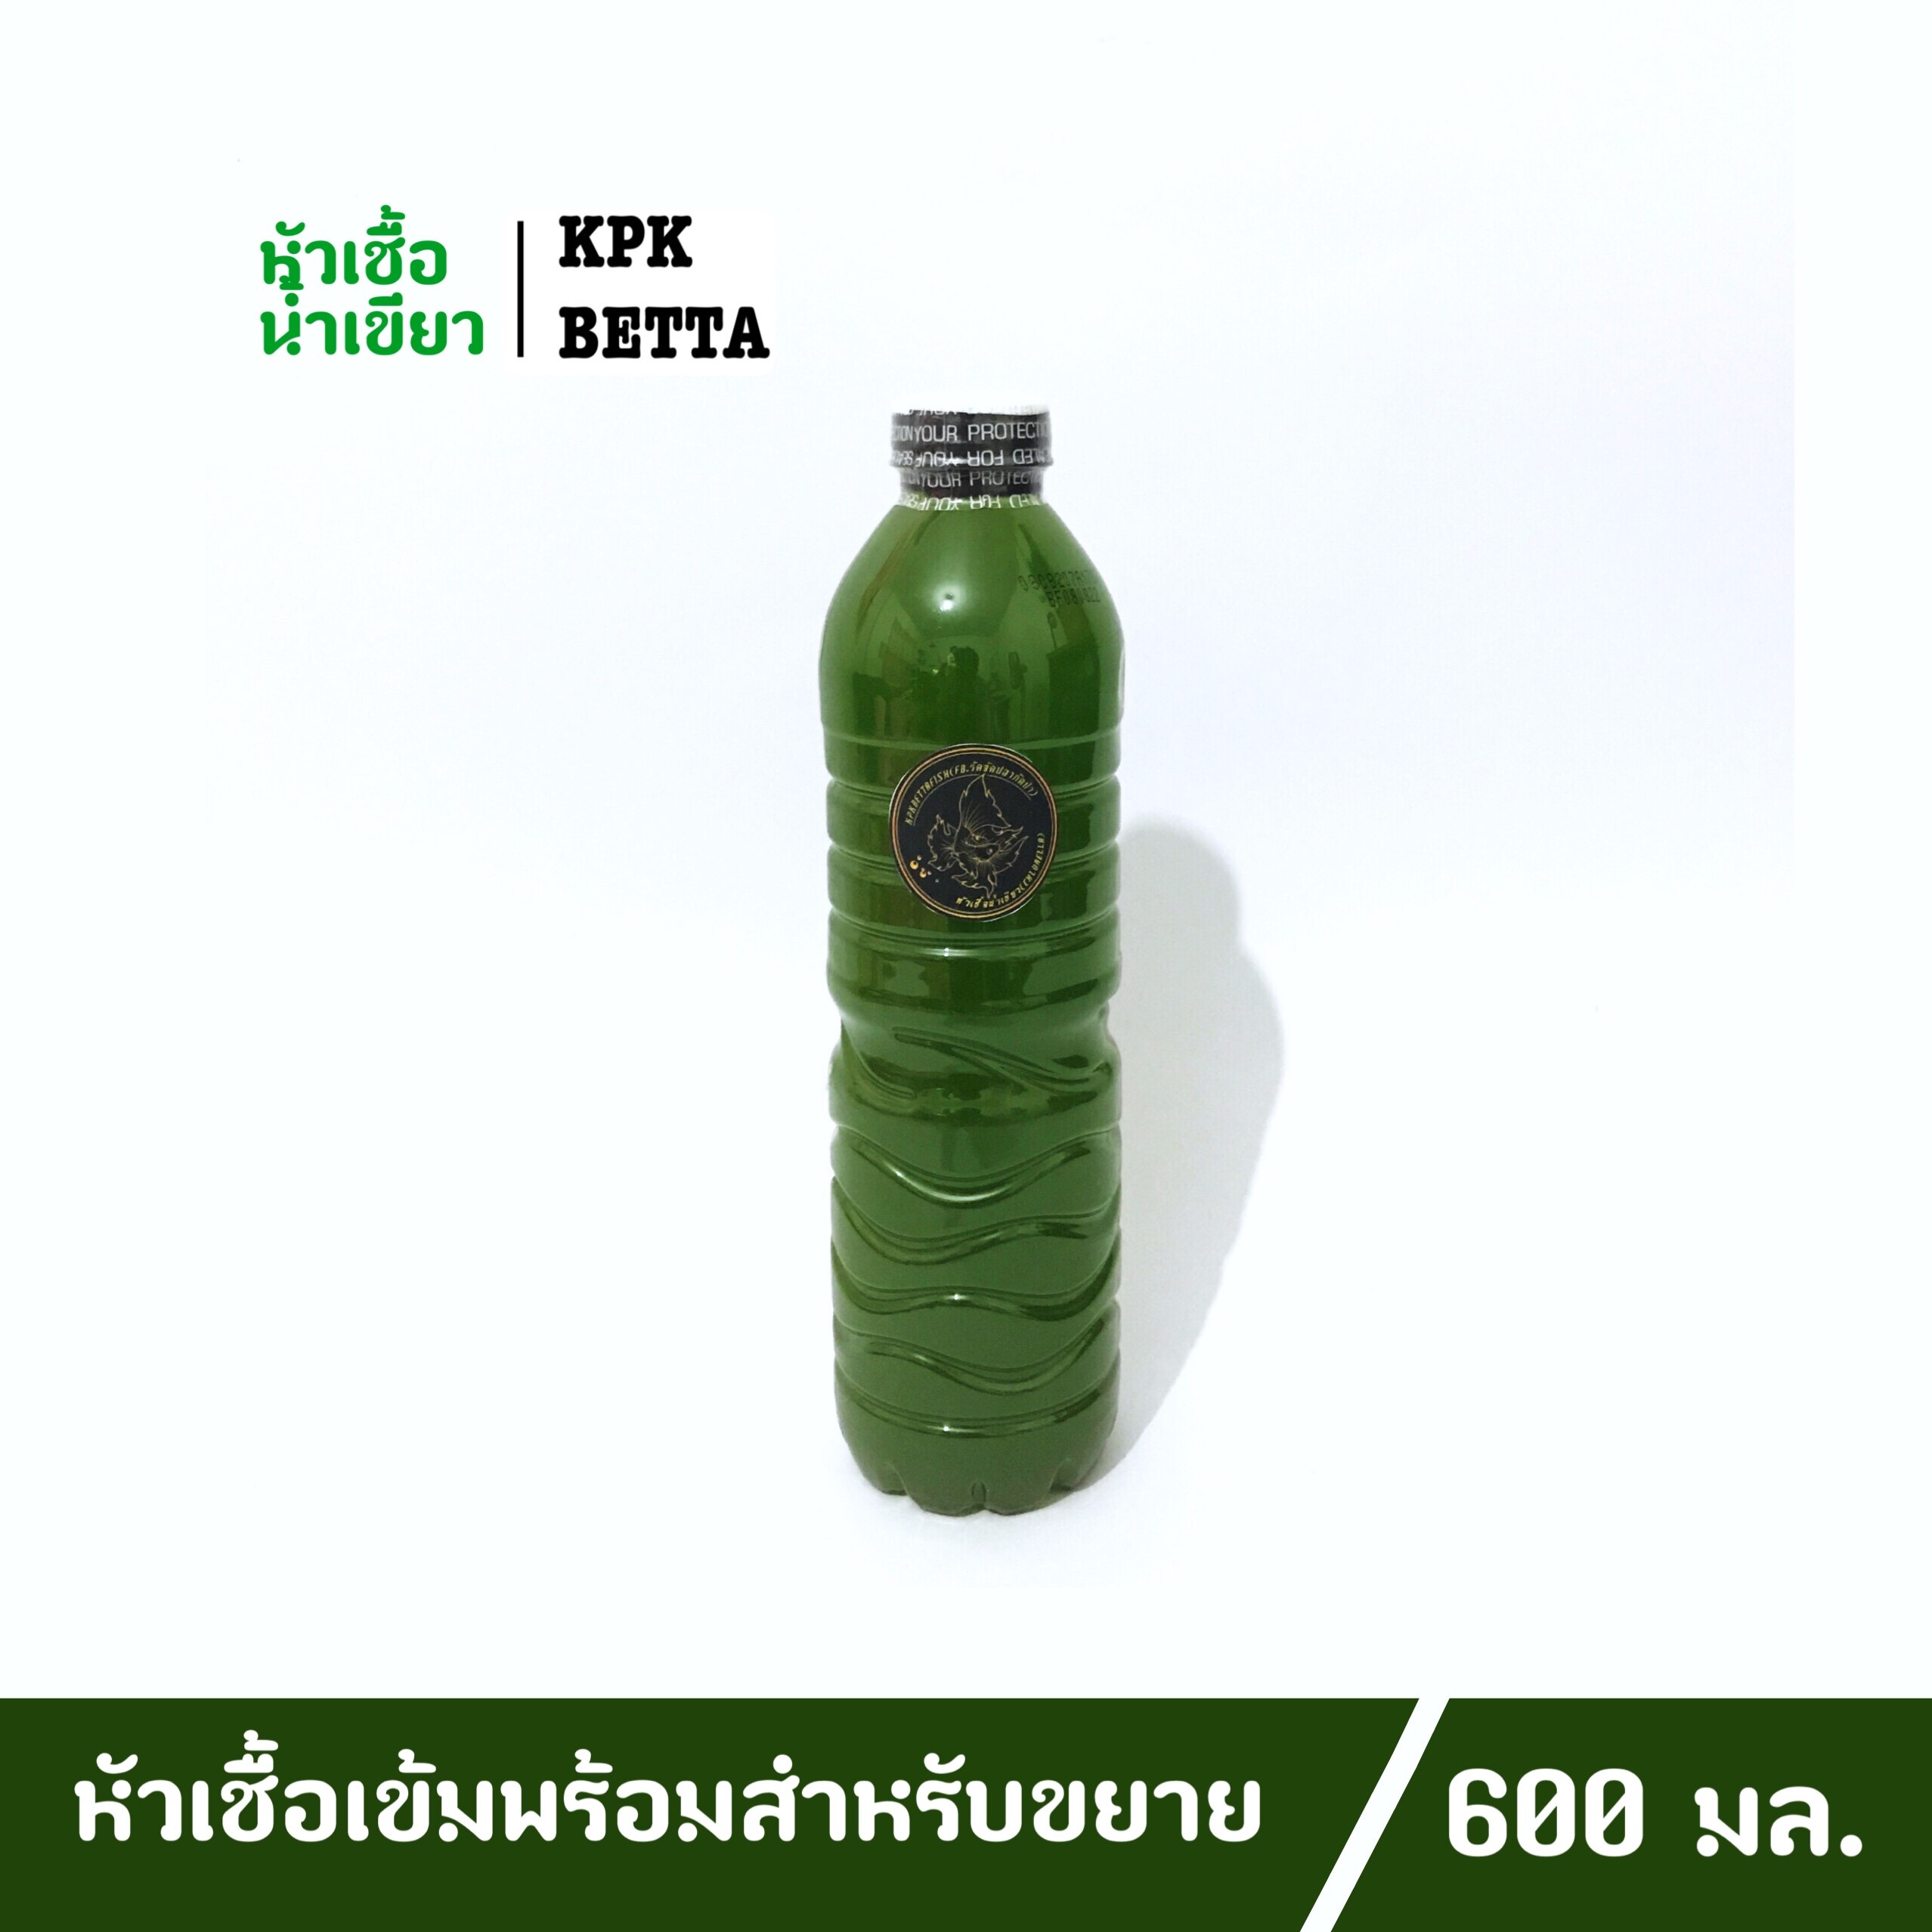 KPK น้ำเขียว หัวเชื้อน้ำเขียว คลอเรลล่า (ขนาด 600 มล.)